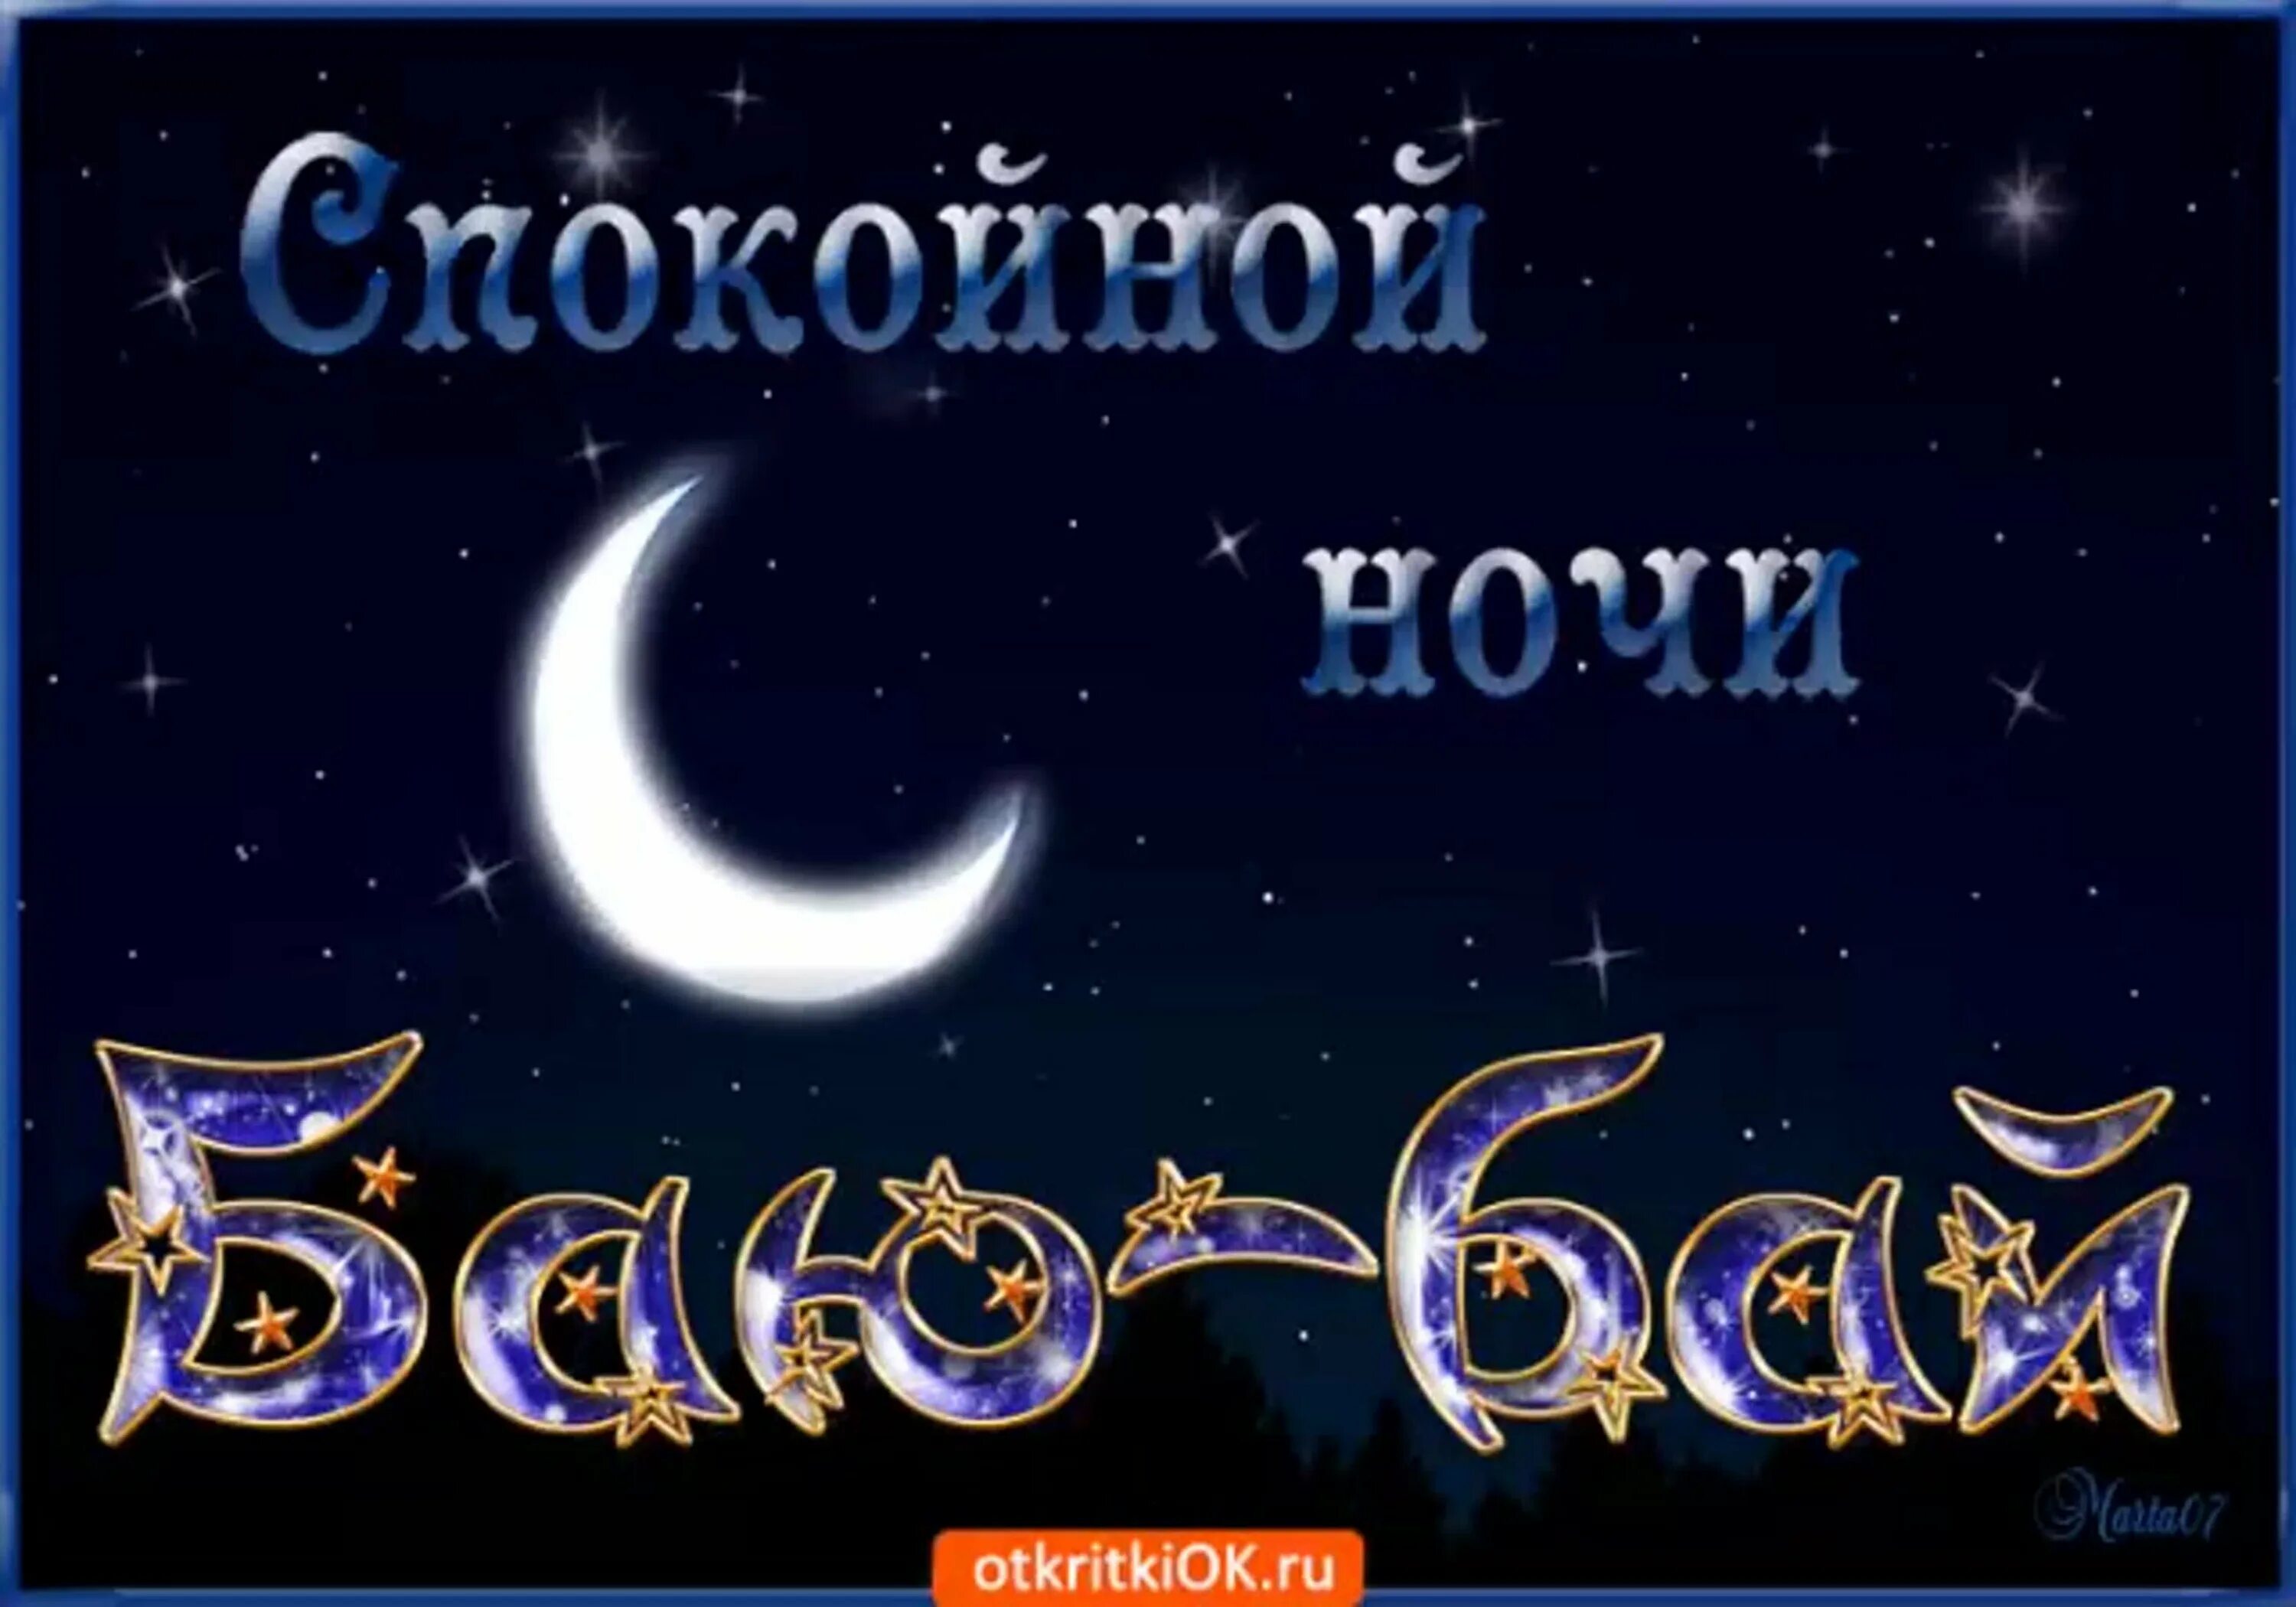 Баю бай татары. Открытки спокойной ночи. Пожелания доброй ночи. Доброй ночи картинки. Спокойной ночи картинки красивые.